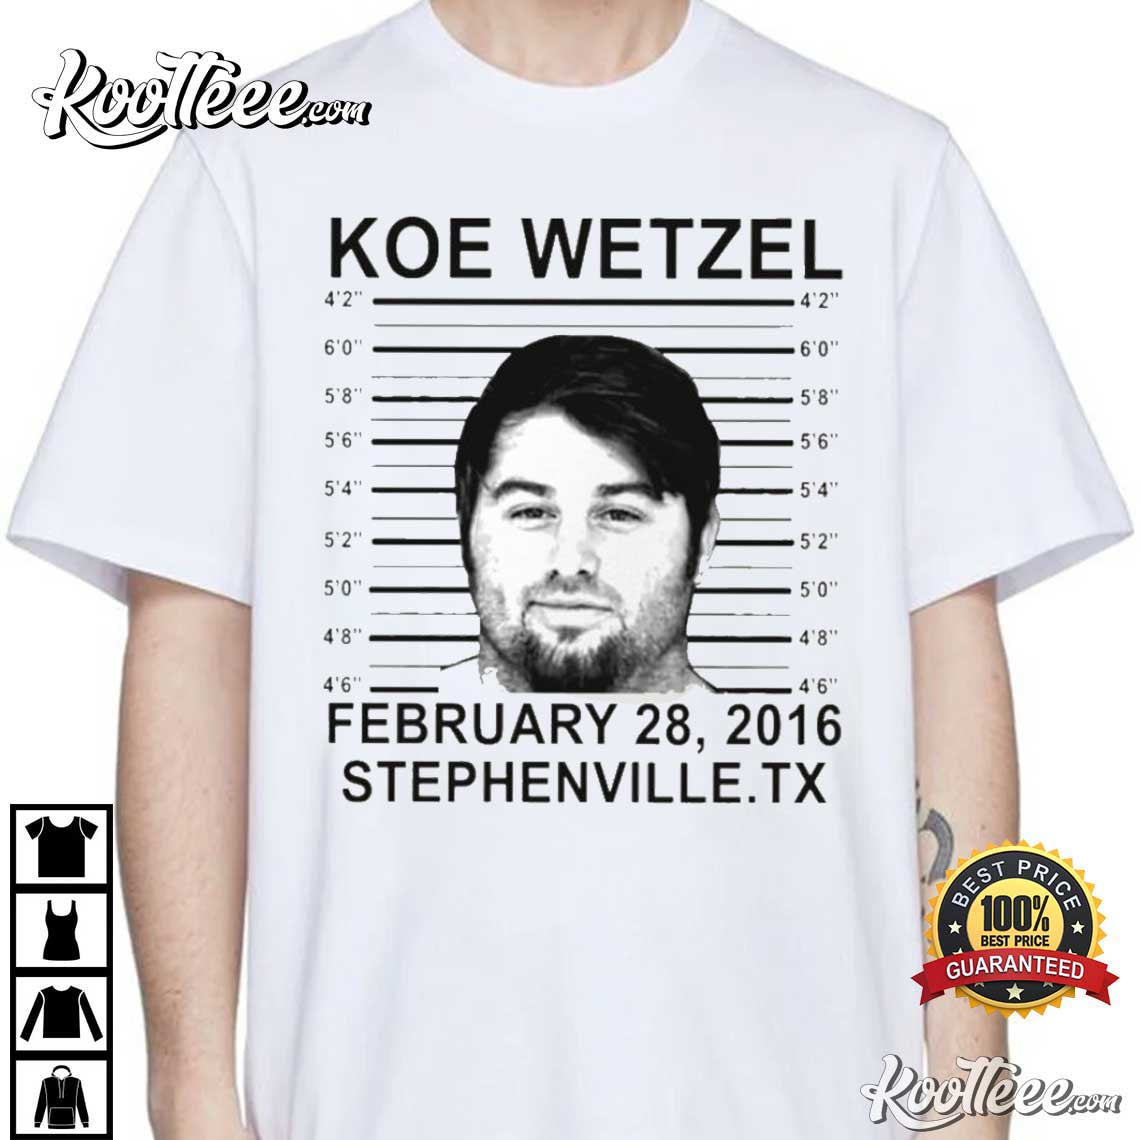 Vintage Koe Wetzel T-Shirt